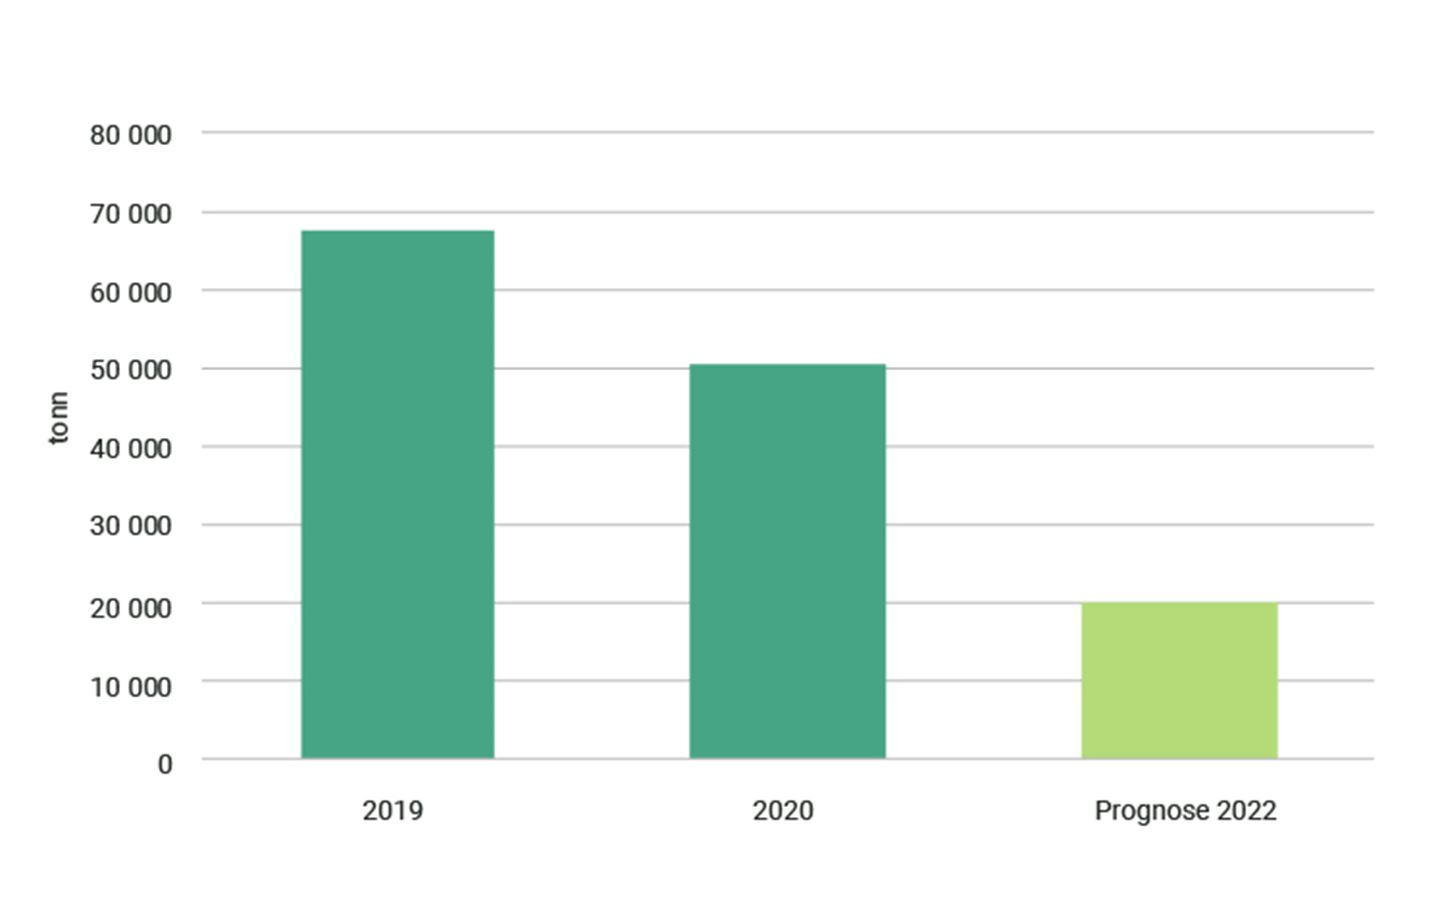 Graf som syner Co2-utslepp 2019, 2020 og prognose for 2022